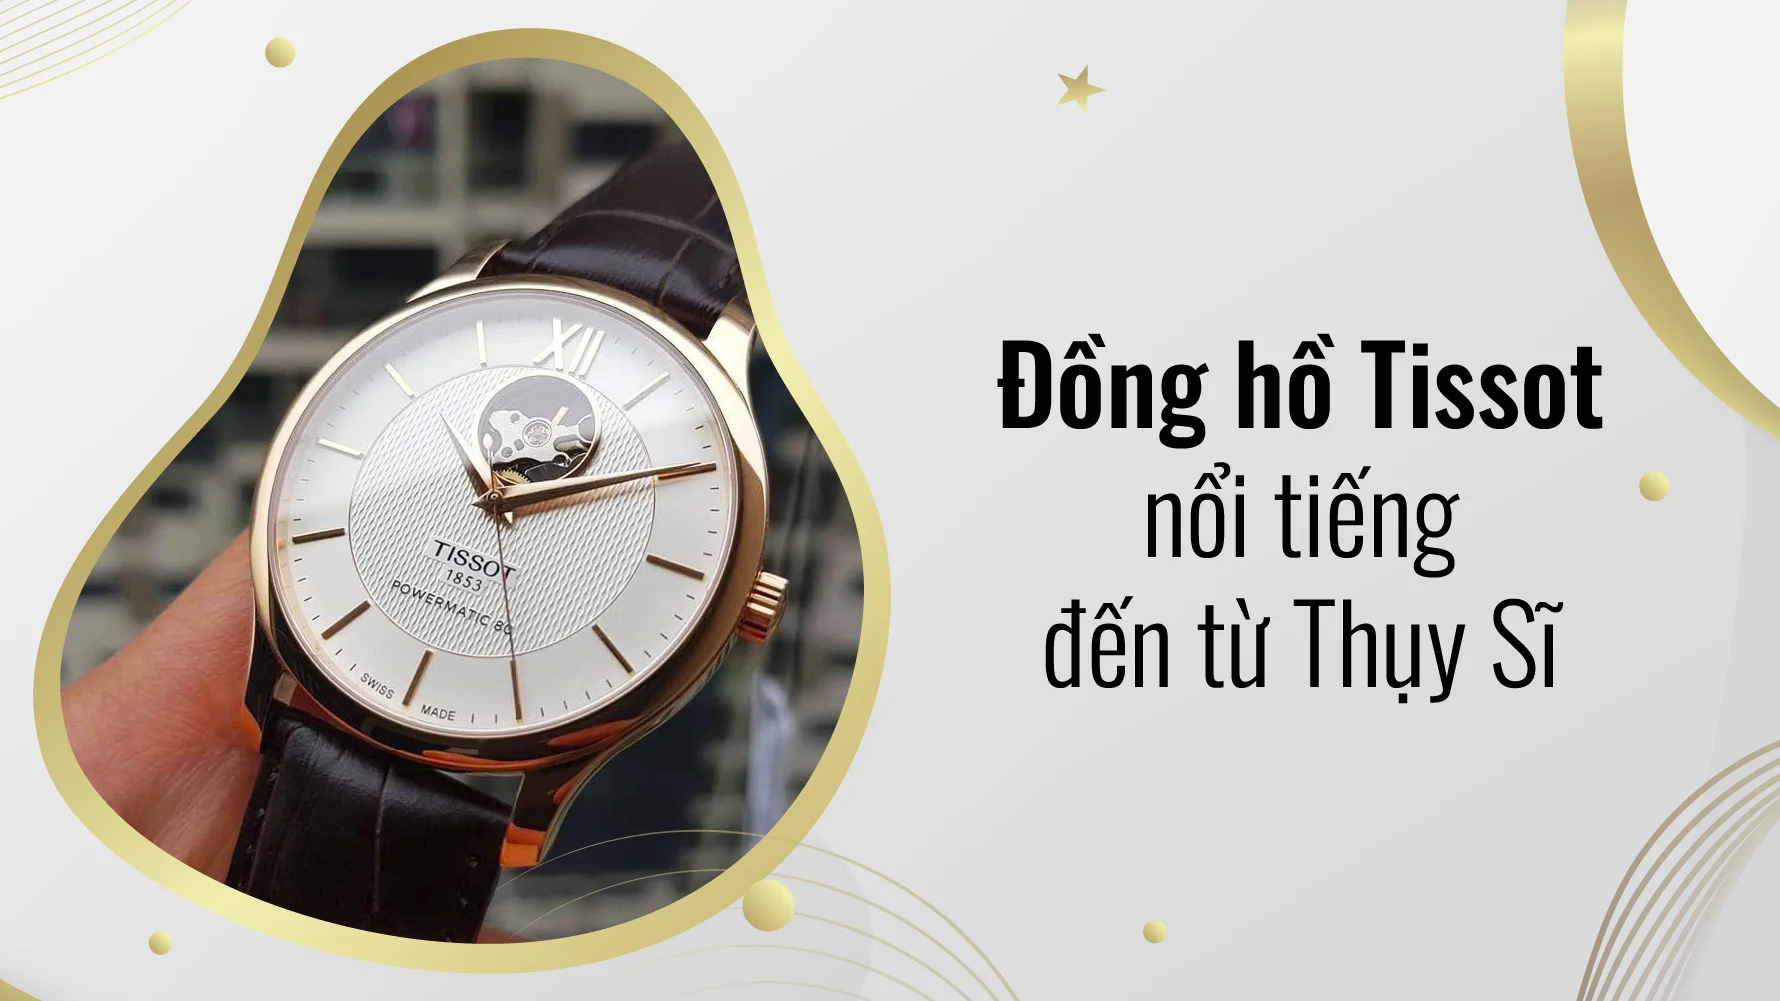 Tissot là đồng hồ nổi tiếng đến từ Thụy Sĩ